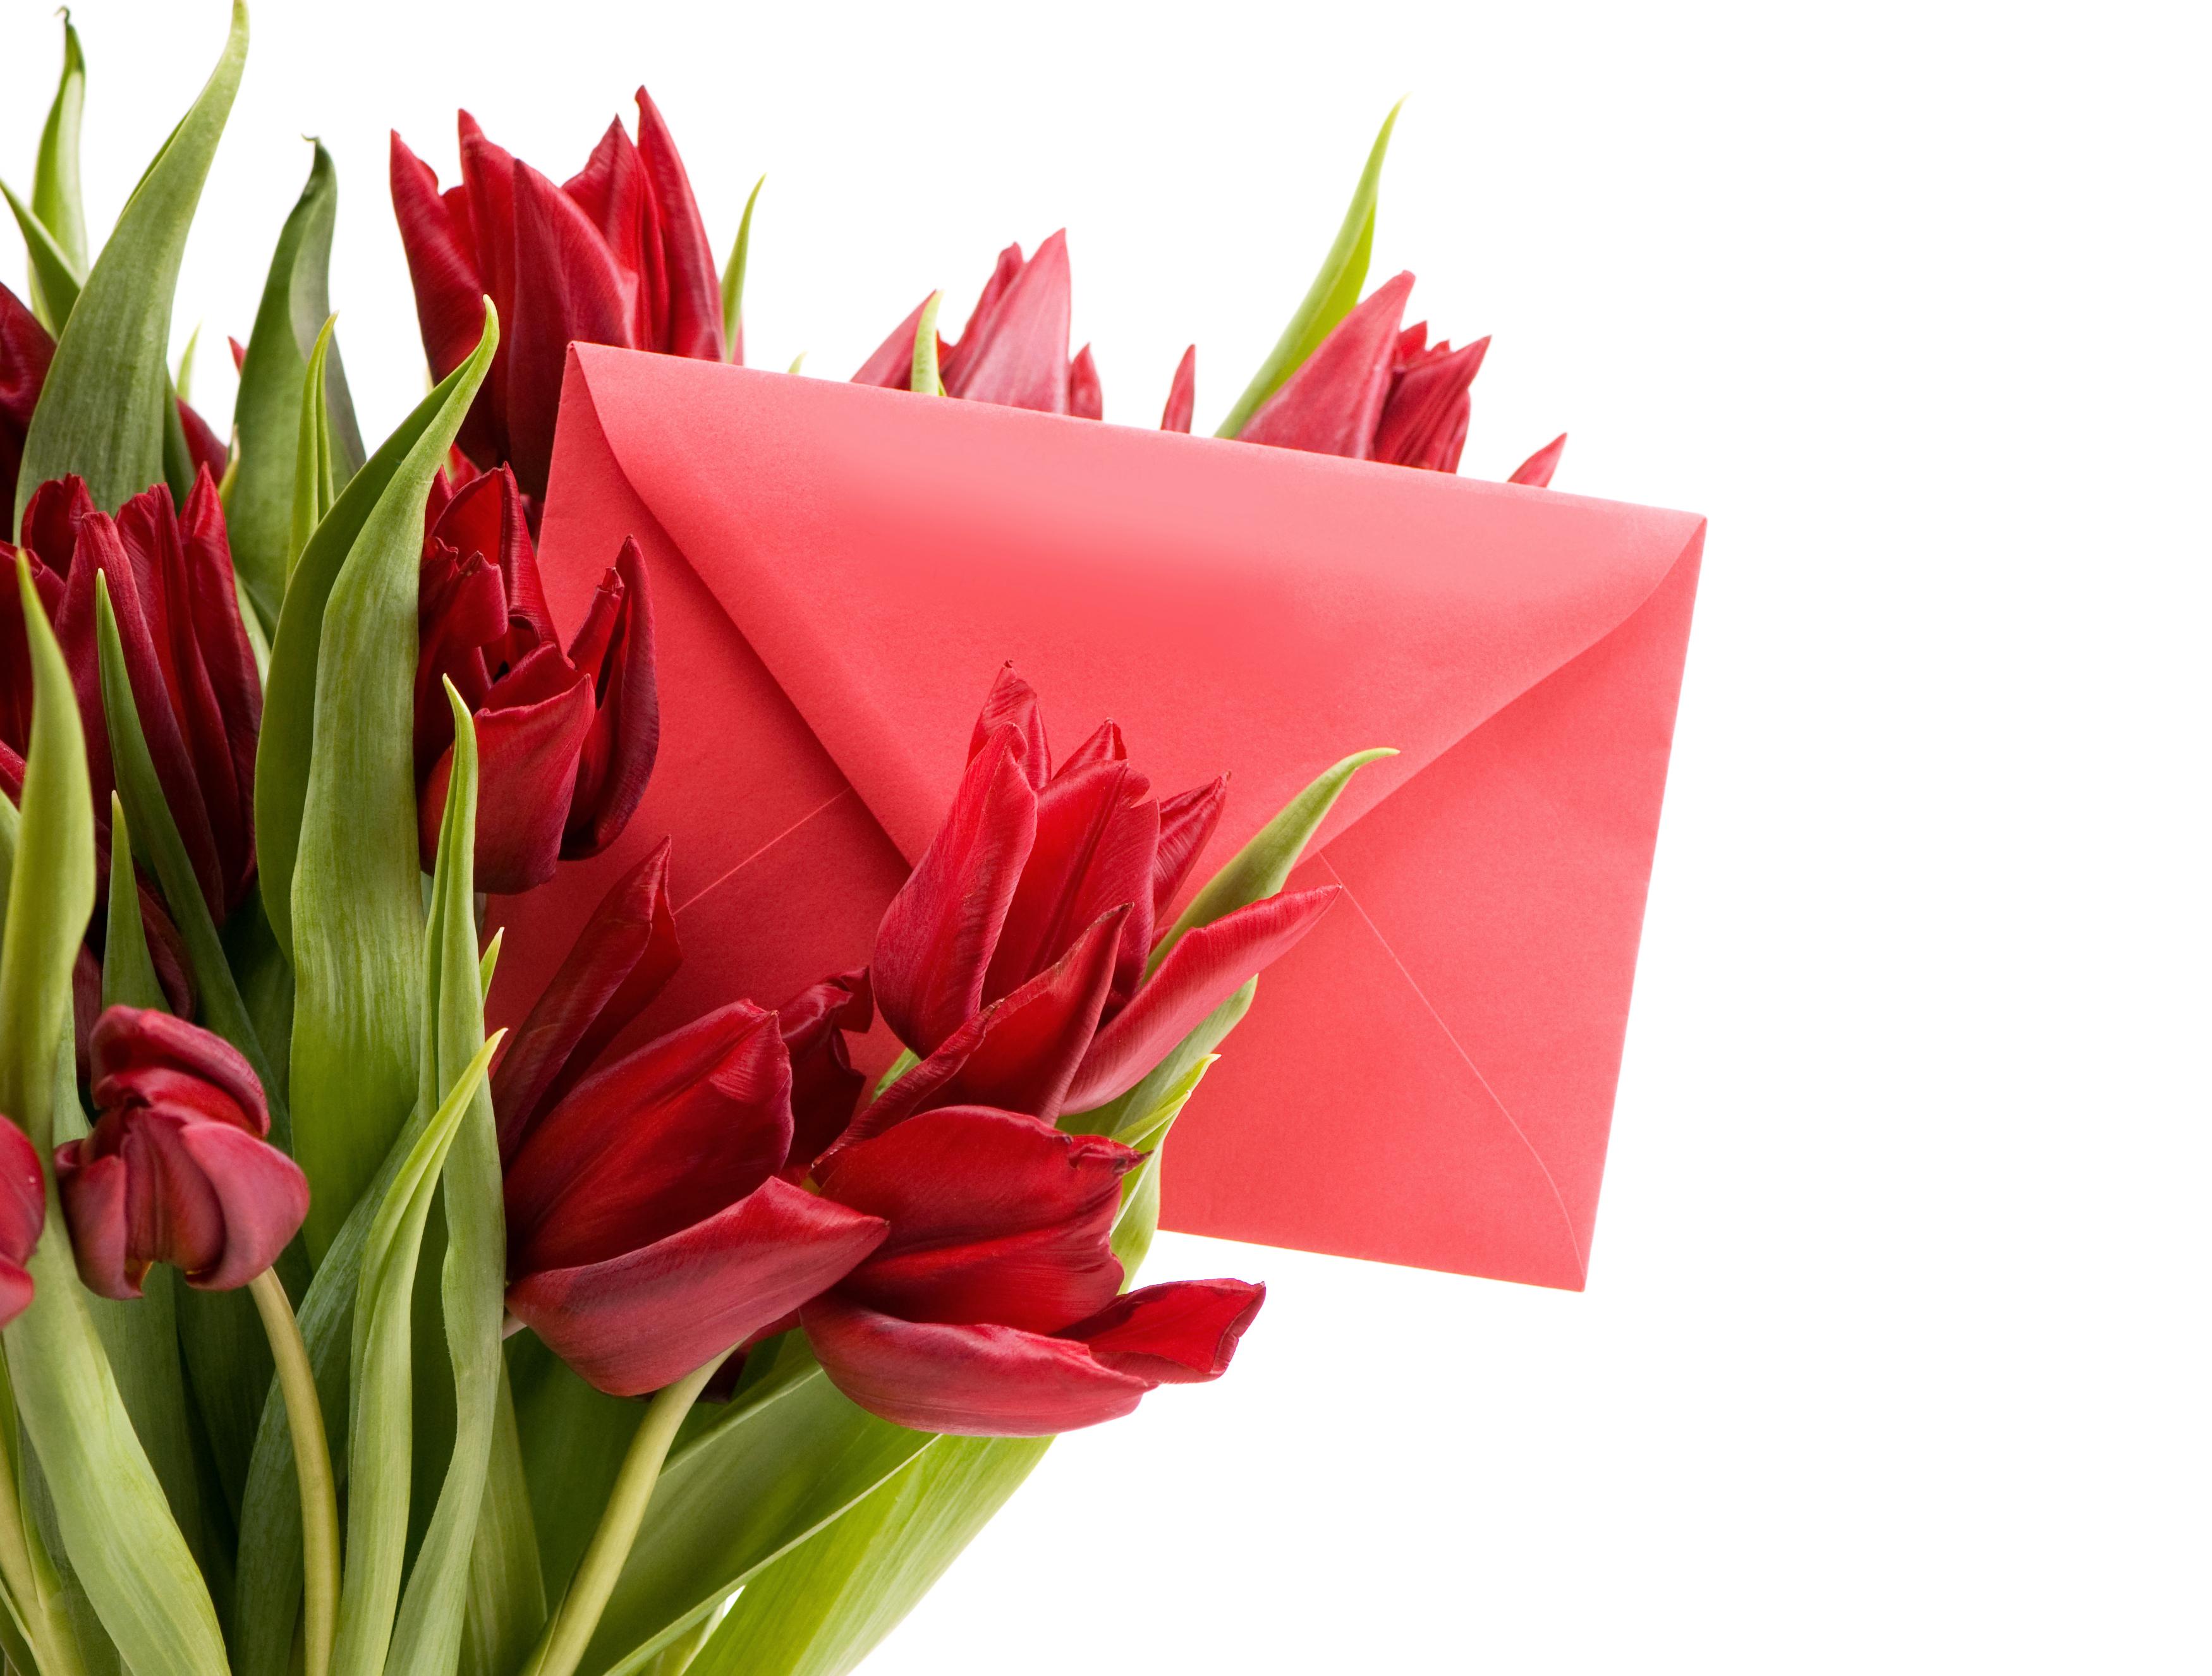 Обои Цветы Тюльпаны, обои для рабочего стола, фотографии цветы, гладиолусы,  8, марта, букет, настроение Обои для рабочего стола, скачать обои картинки  заставки на рабочий стол.